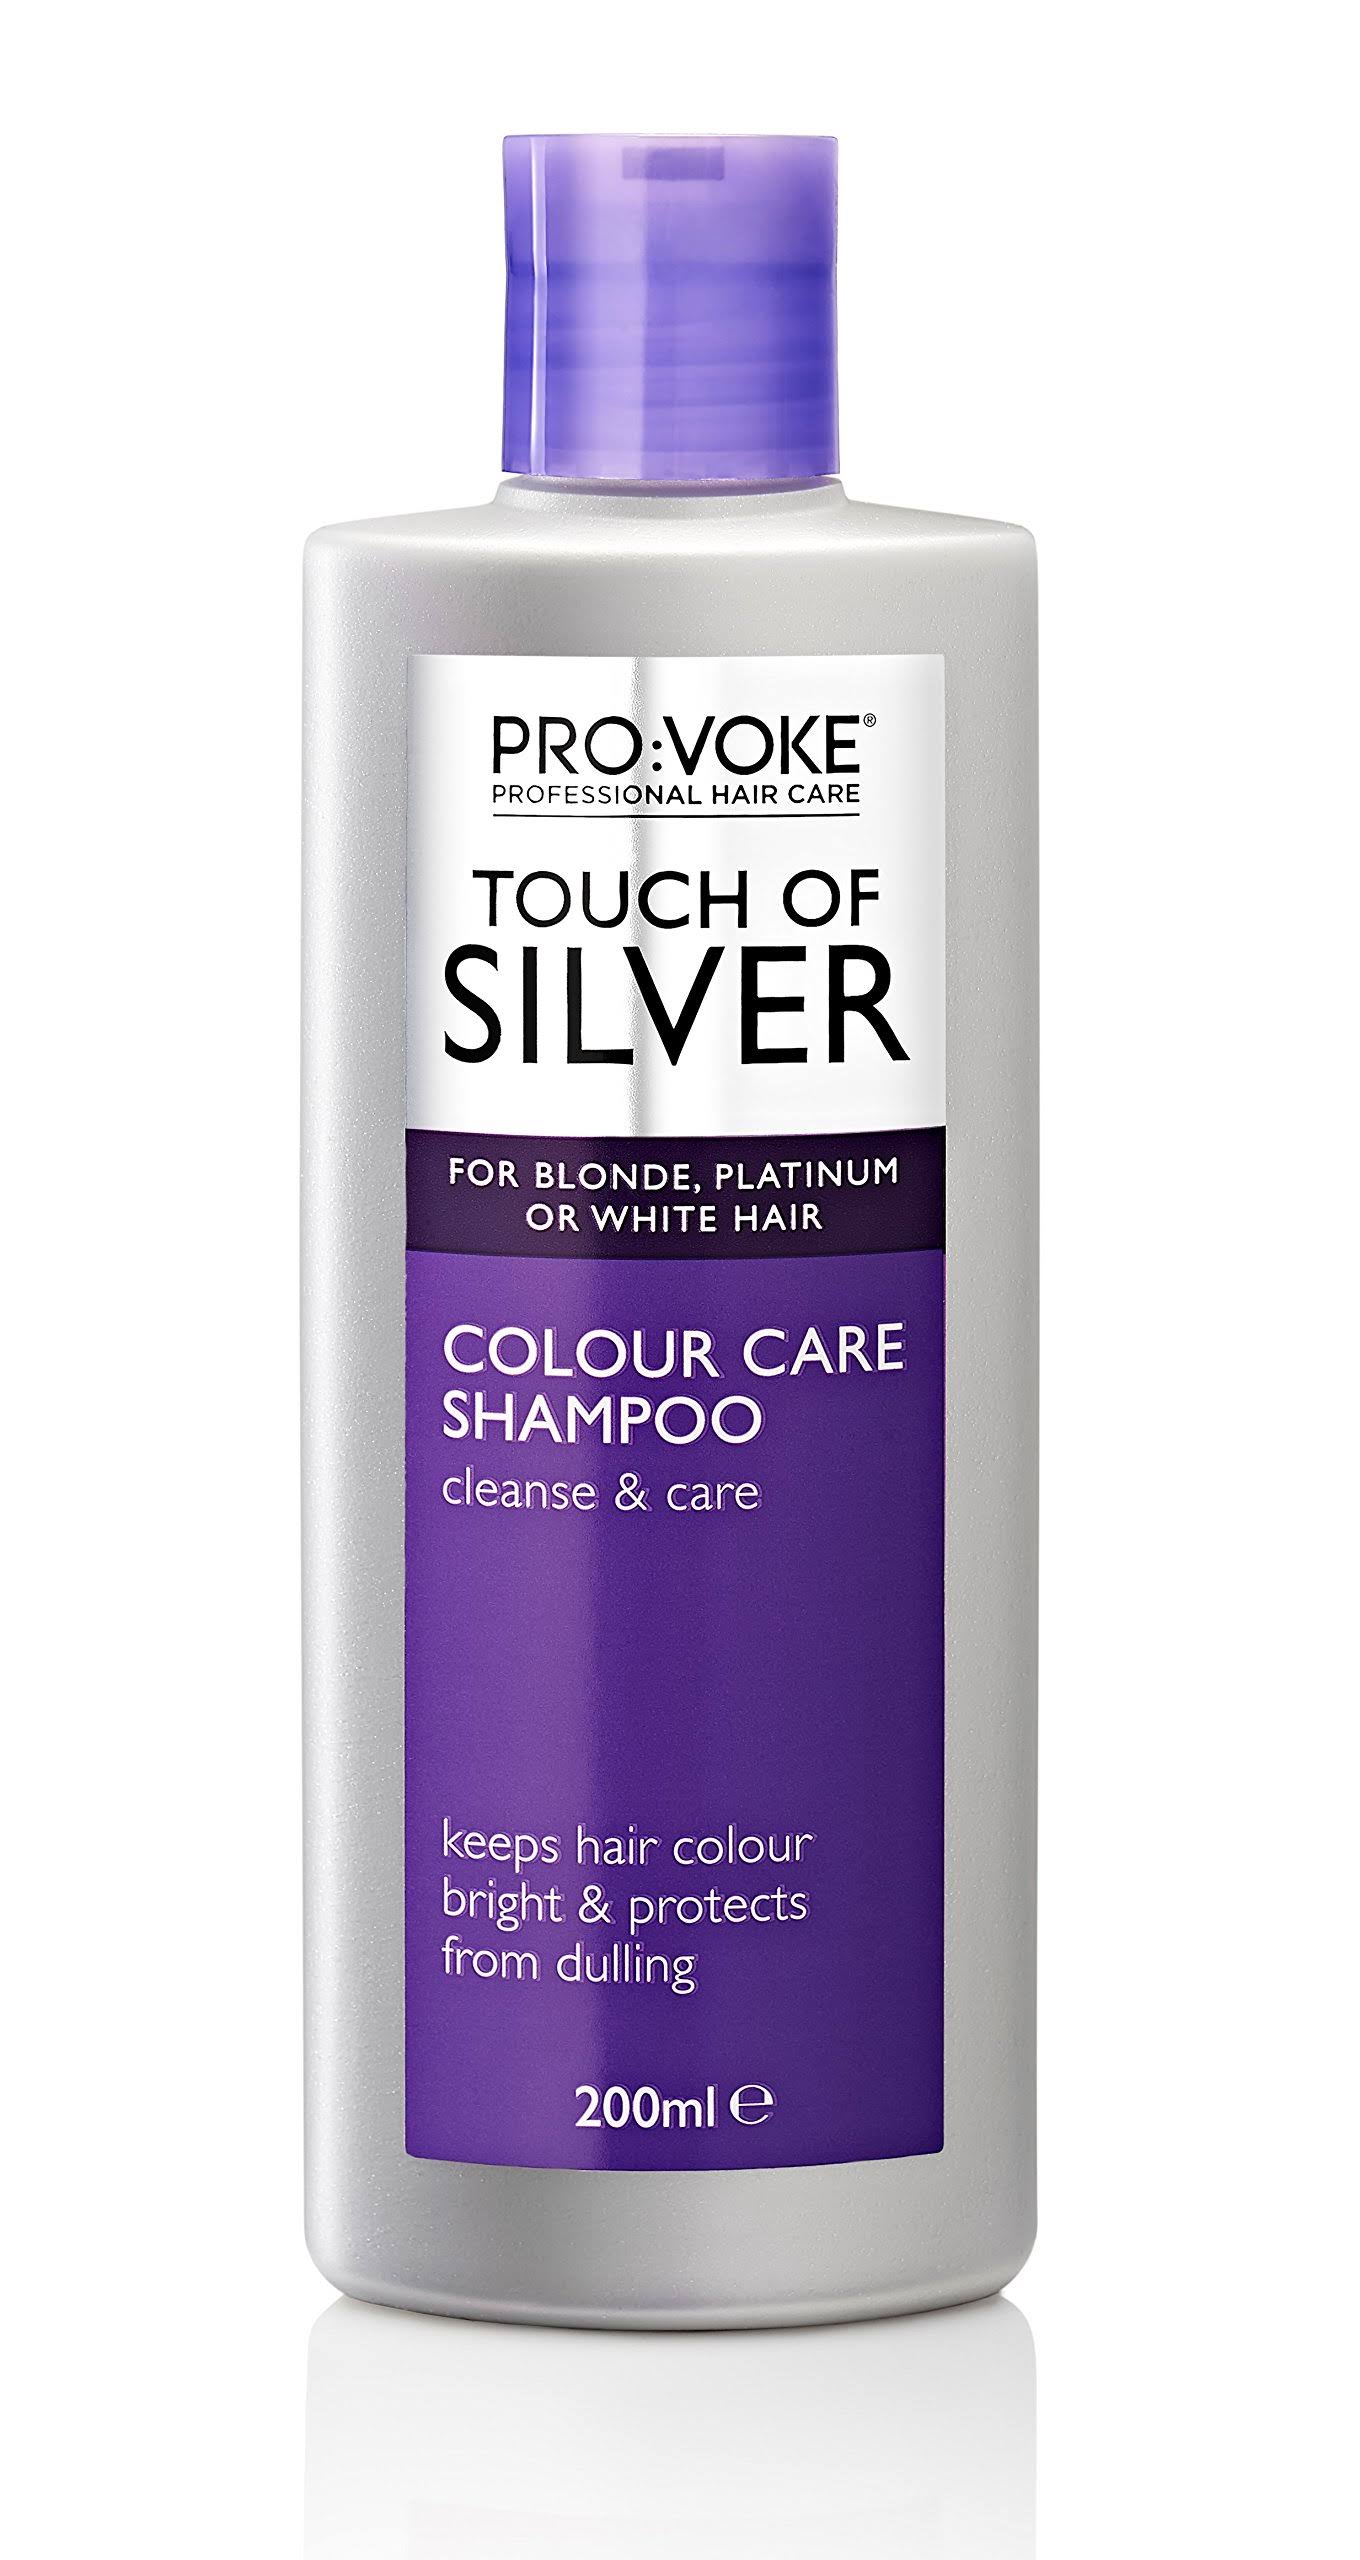 Pro:Voke Touch Of Silver Colour Care Shampoo - 200ml